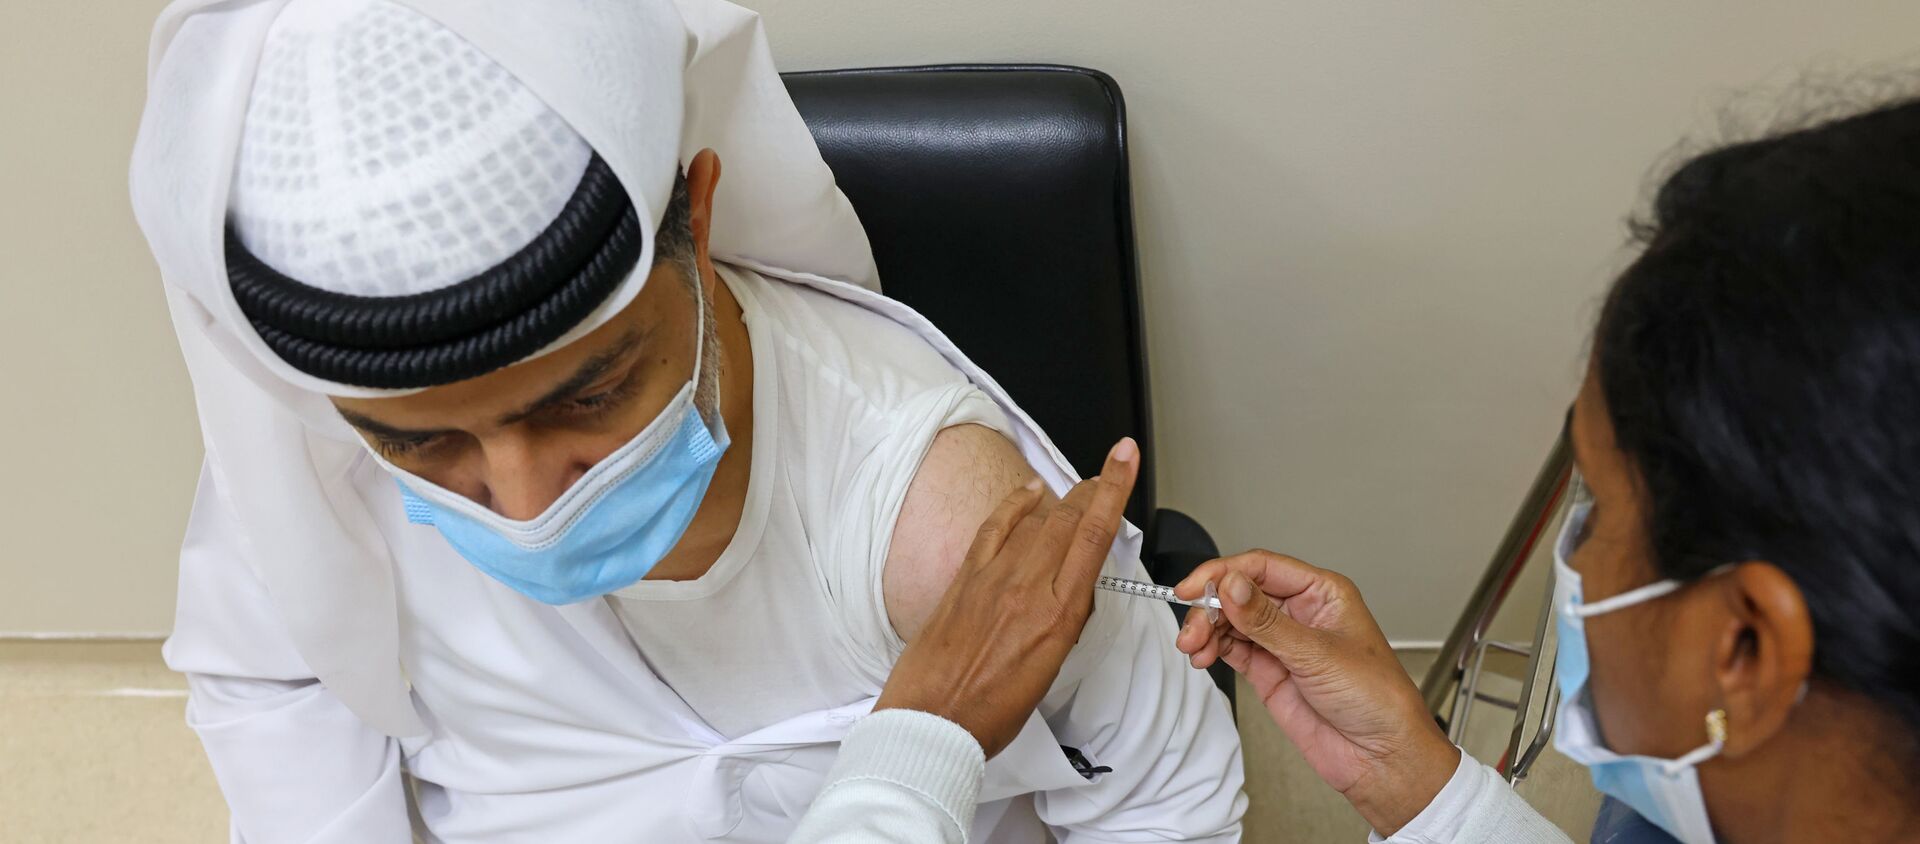 Un hombre se vacuna en Dubái contra el COVID-19 en diciembre de 2020 - Sputnik Mundo, 1920, 03.02.2021